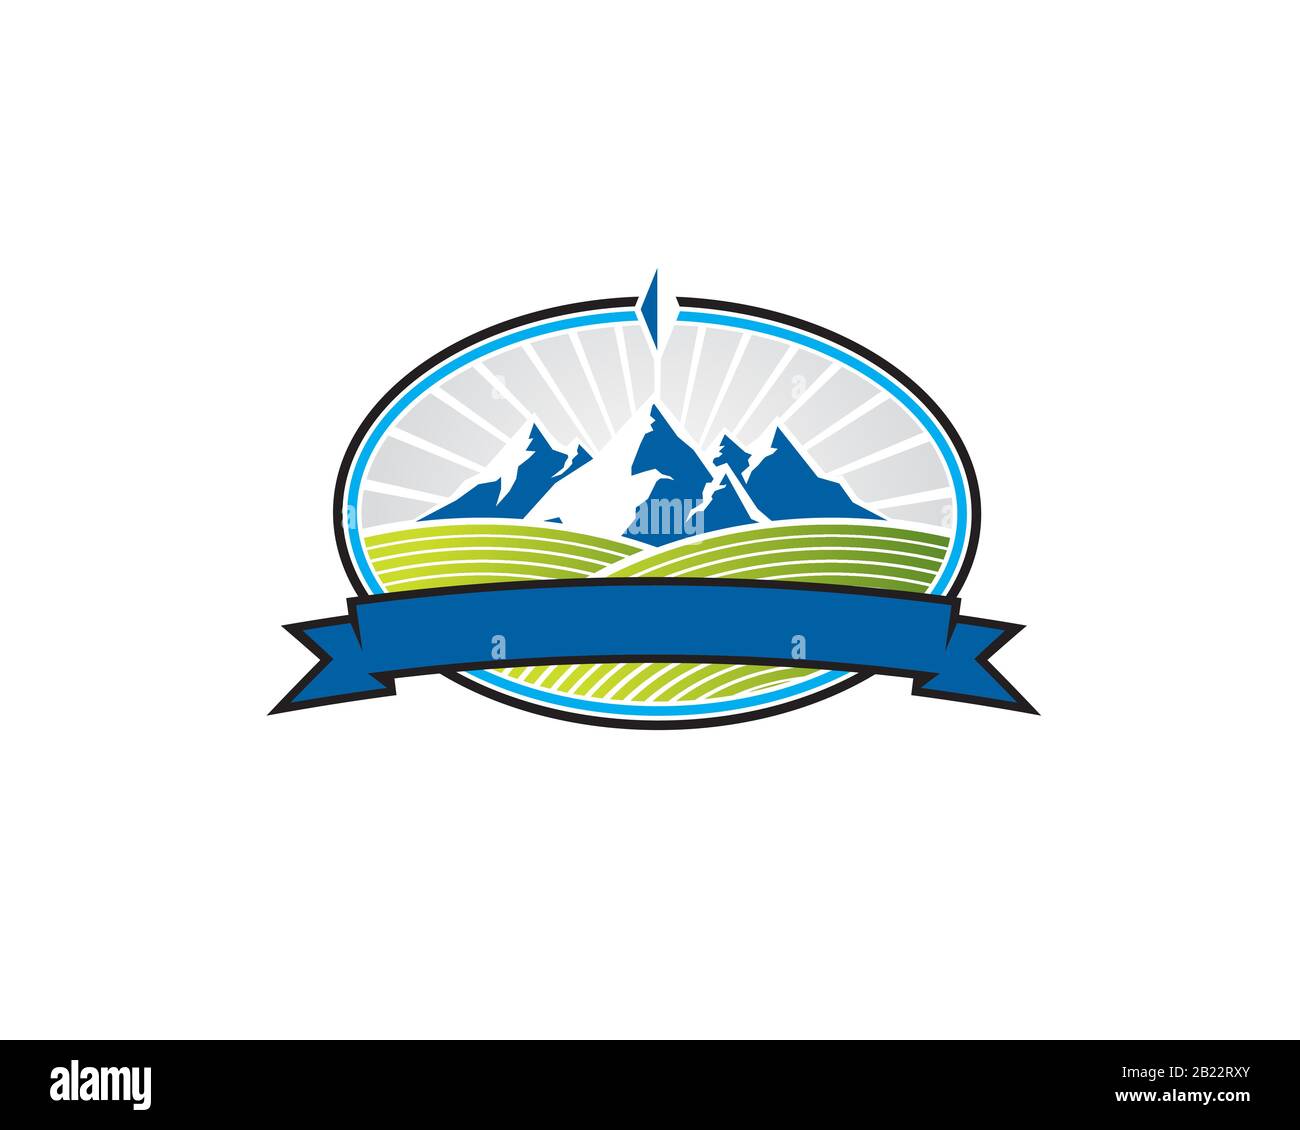 Emblem Wappen Illustration Logo von einem eisigen Schnee Blue Mountain Uppon Green Hill Valey Feldfrüchte Boden in elipse Mit Band Stock Vektor